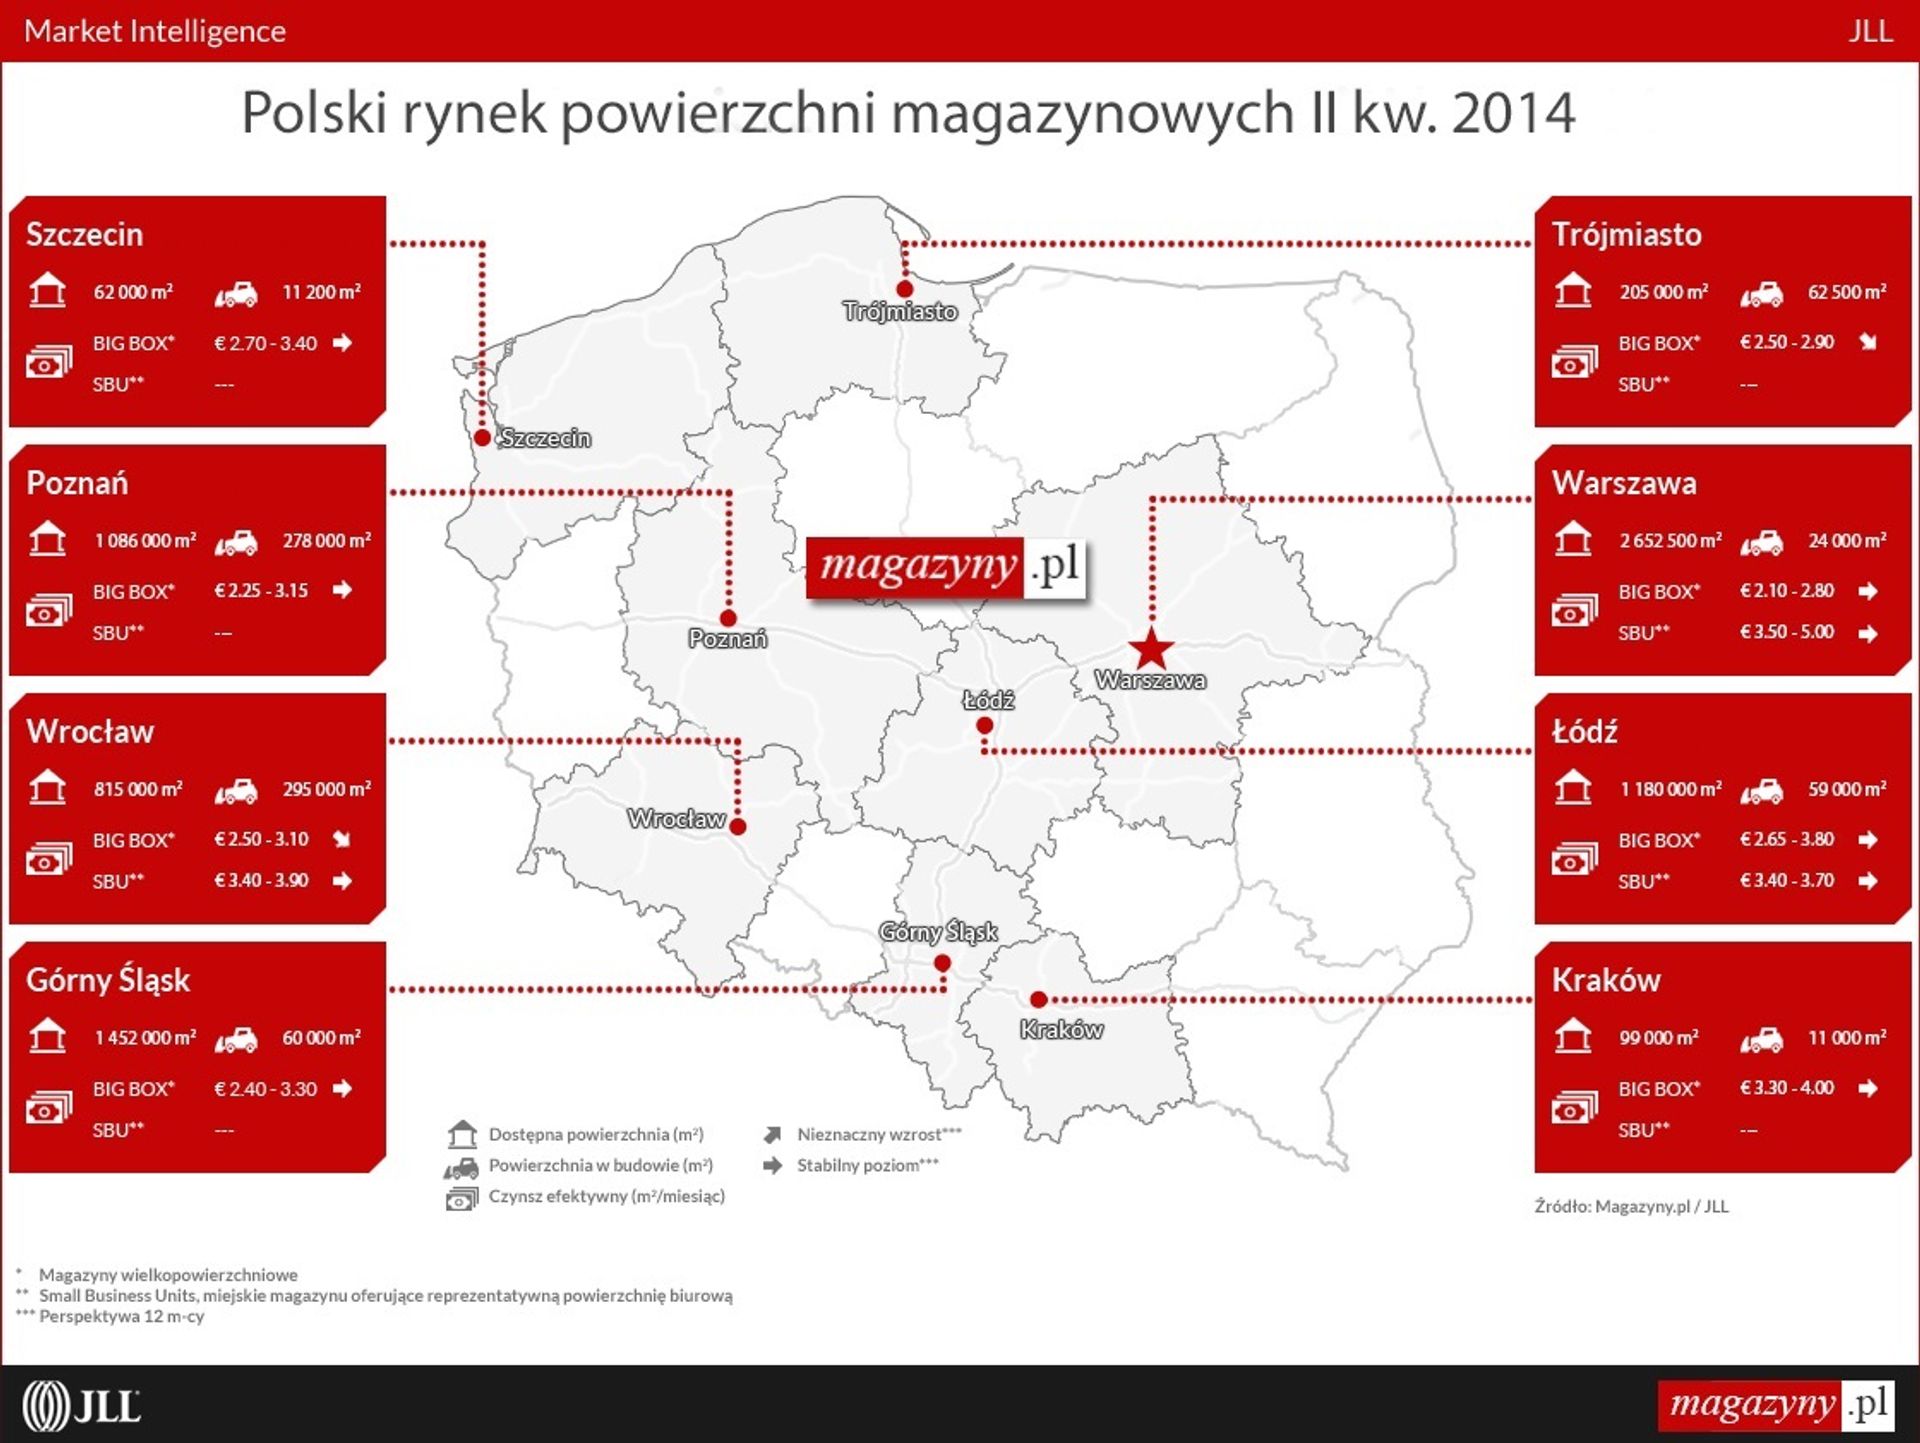  Powrót hossy na rynku magazynowym w Polsce